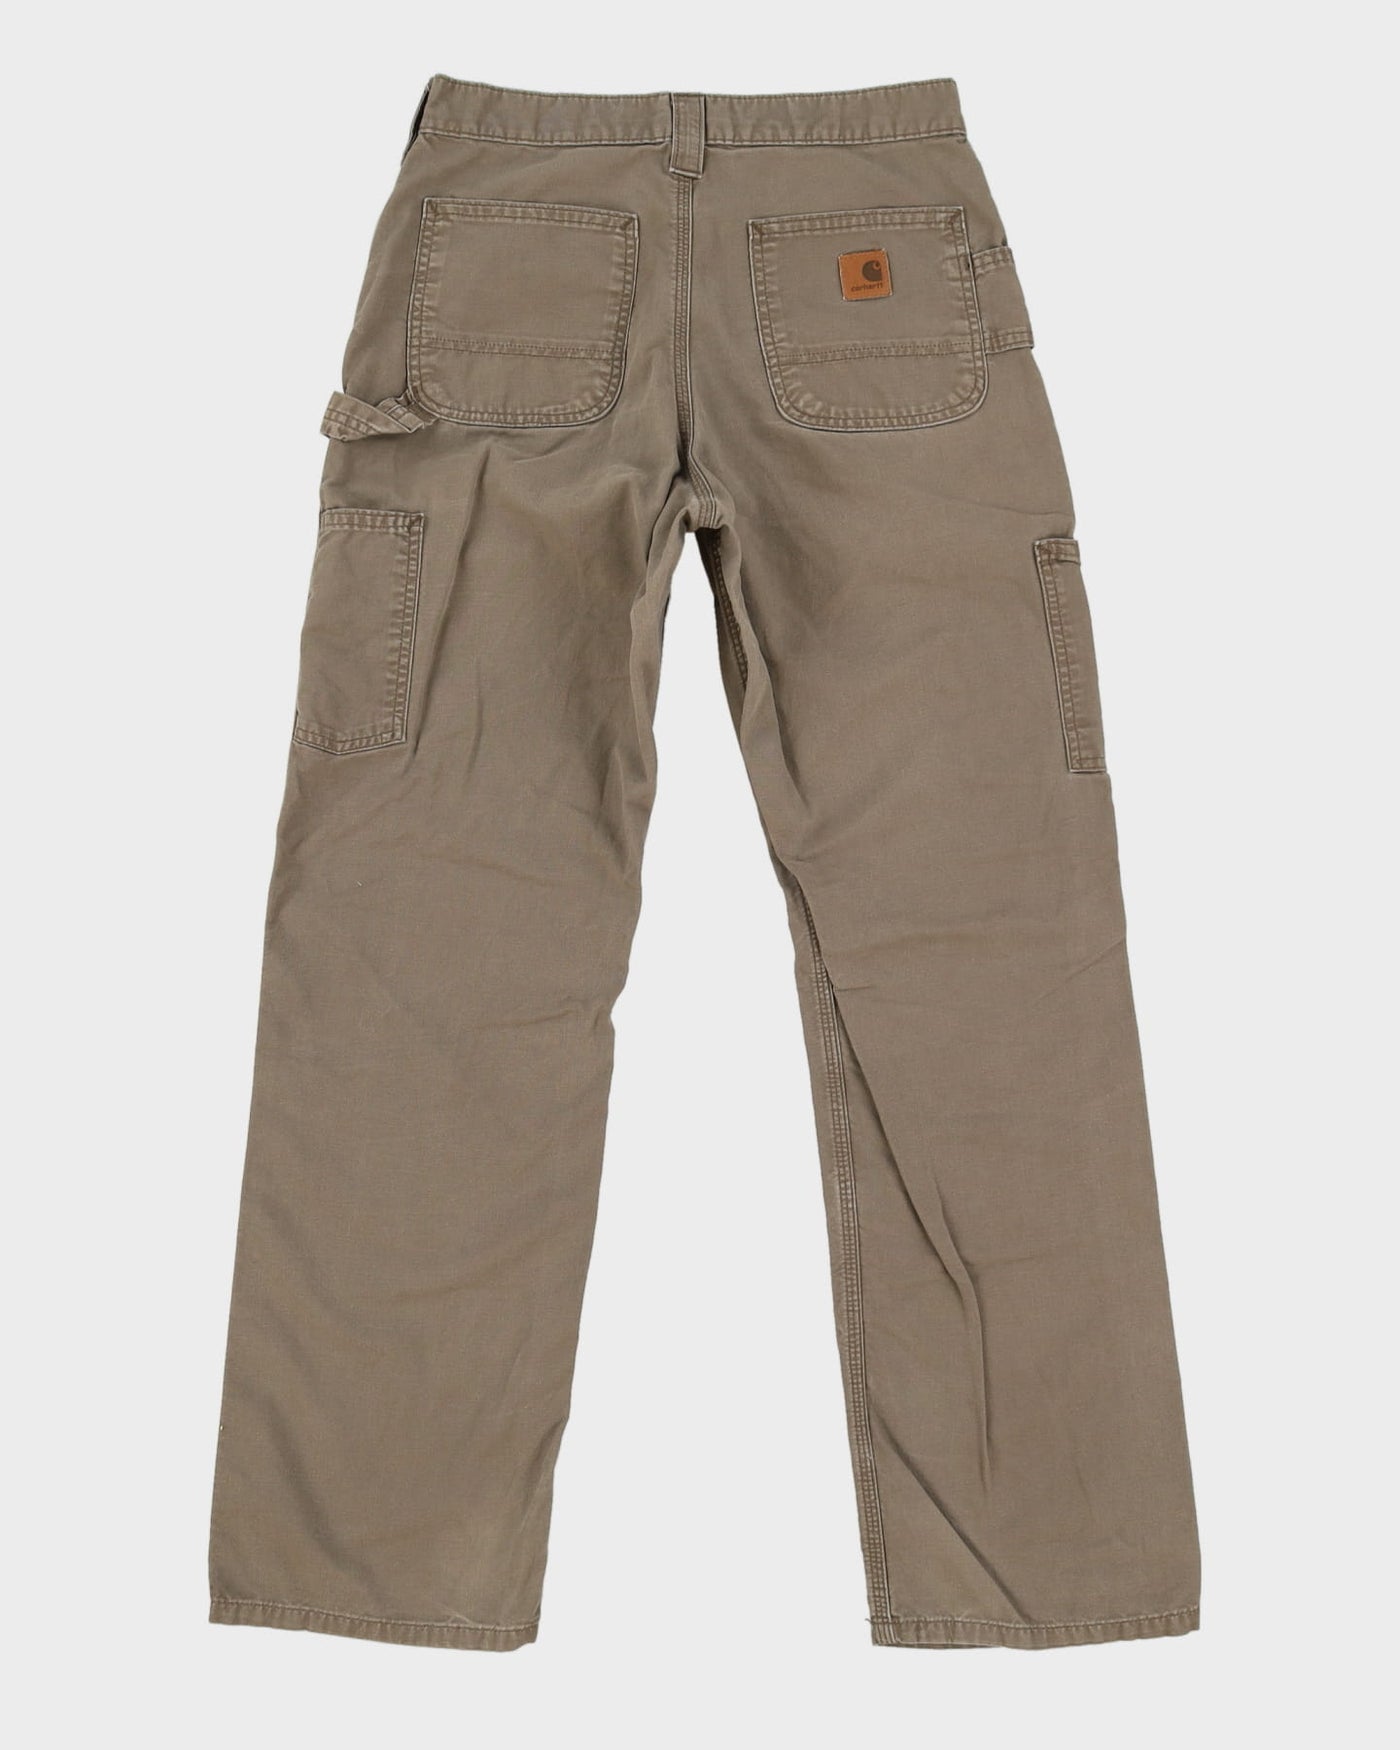 Carhartt Dark Beige Workwear Trousers / Jeans - W29 L31